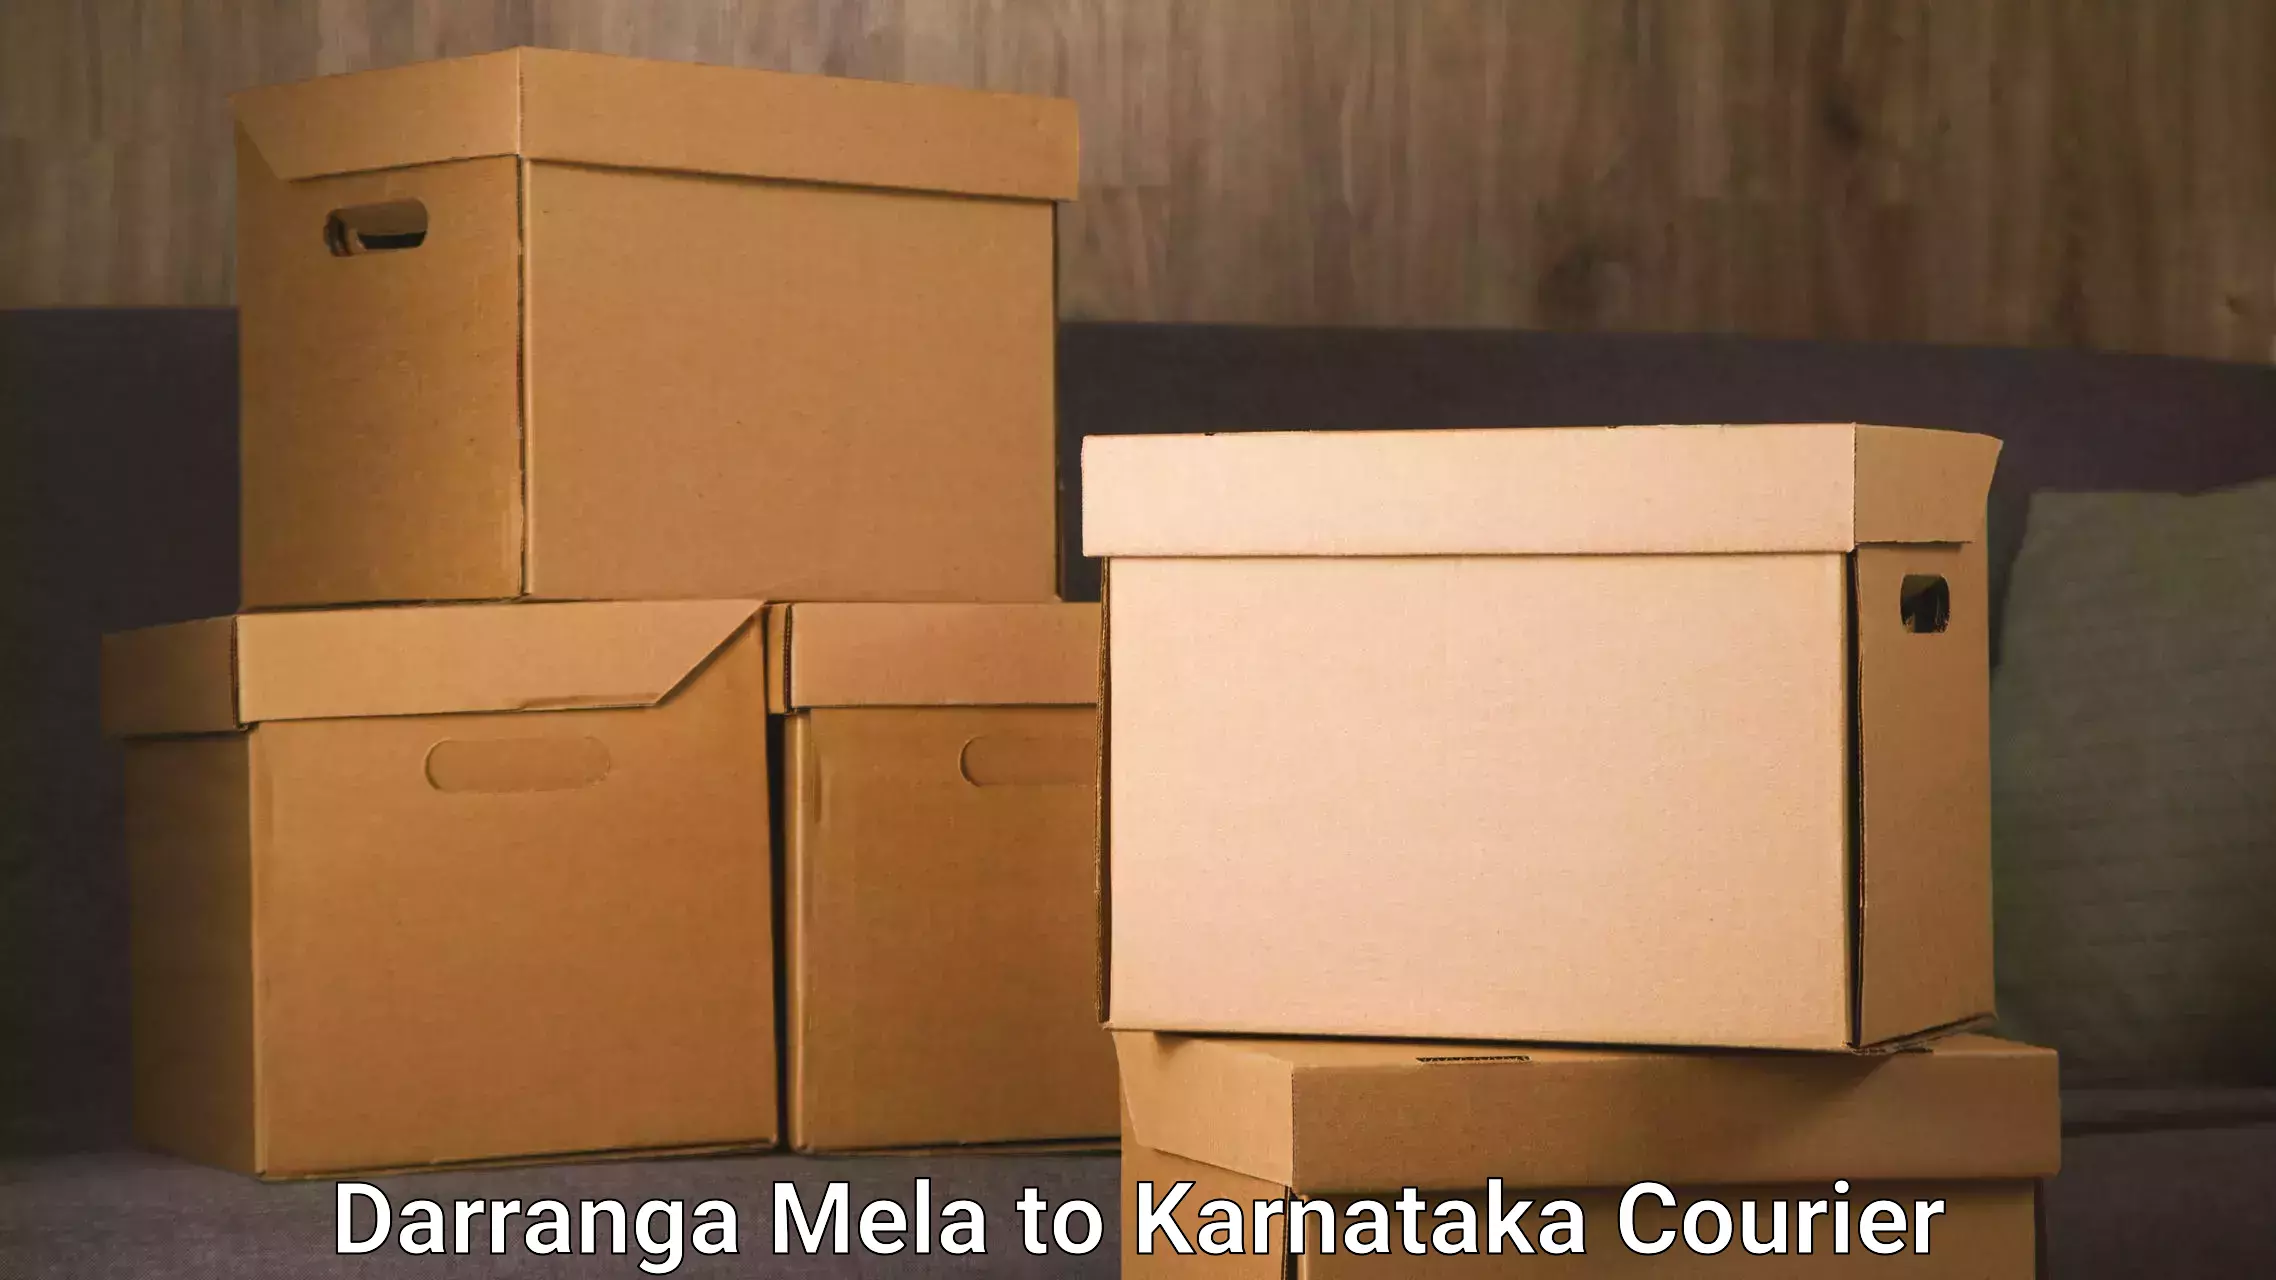 Customer-oriented courier services Darranga Mela to Rona Gadag